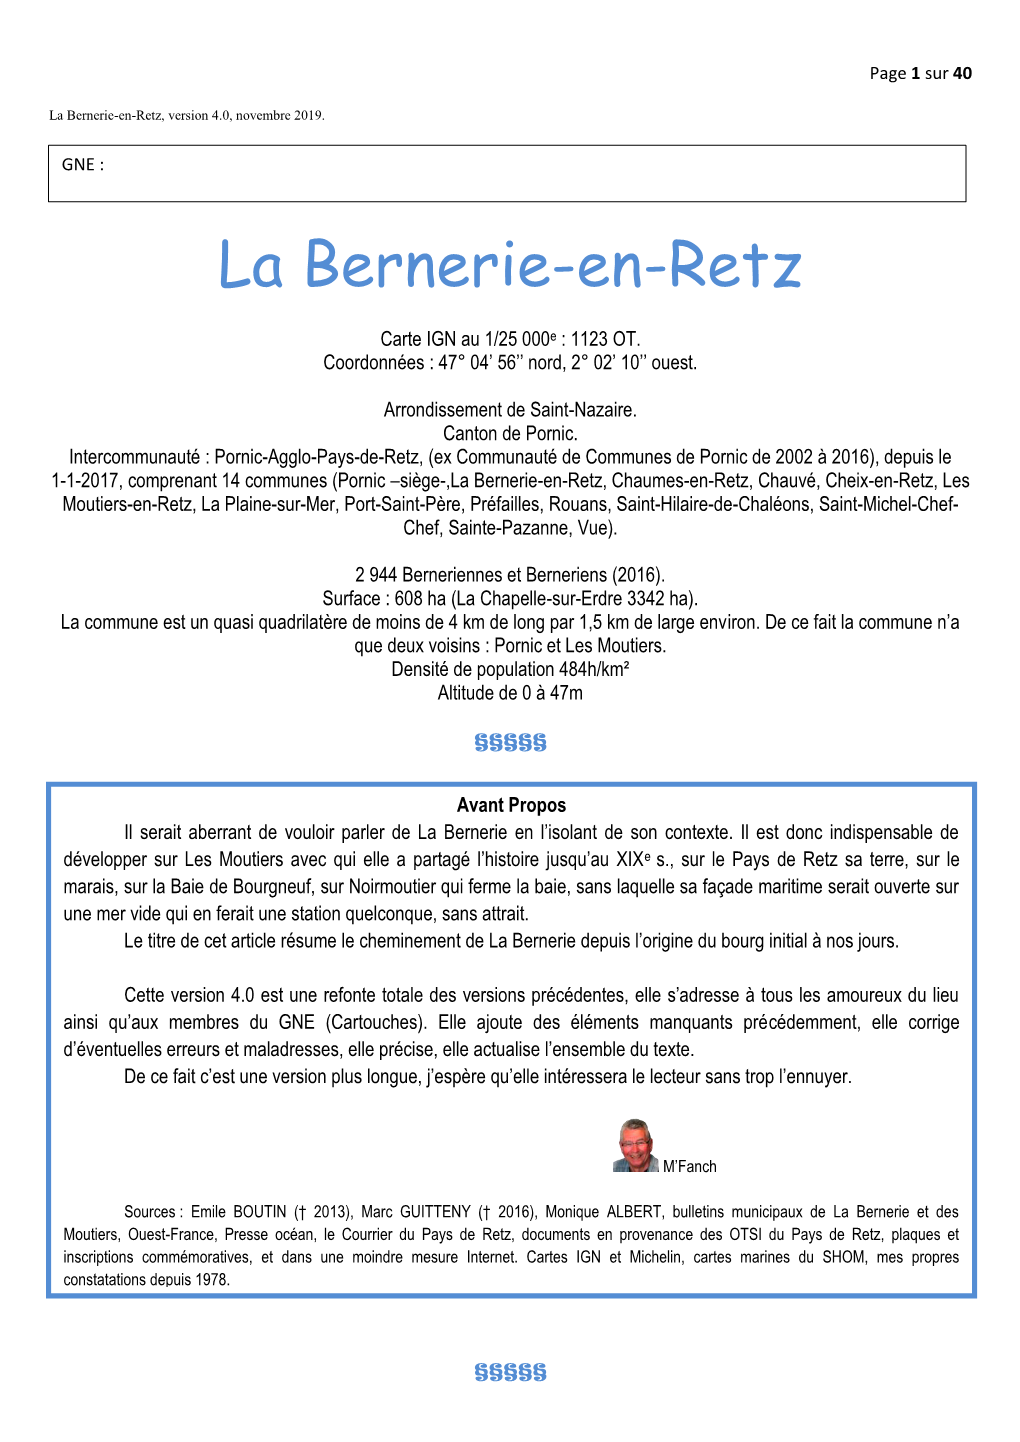 La Bernerie-En-Retz, Version 4.0, Novembre 2019